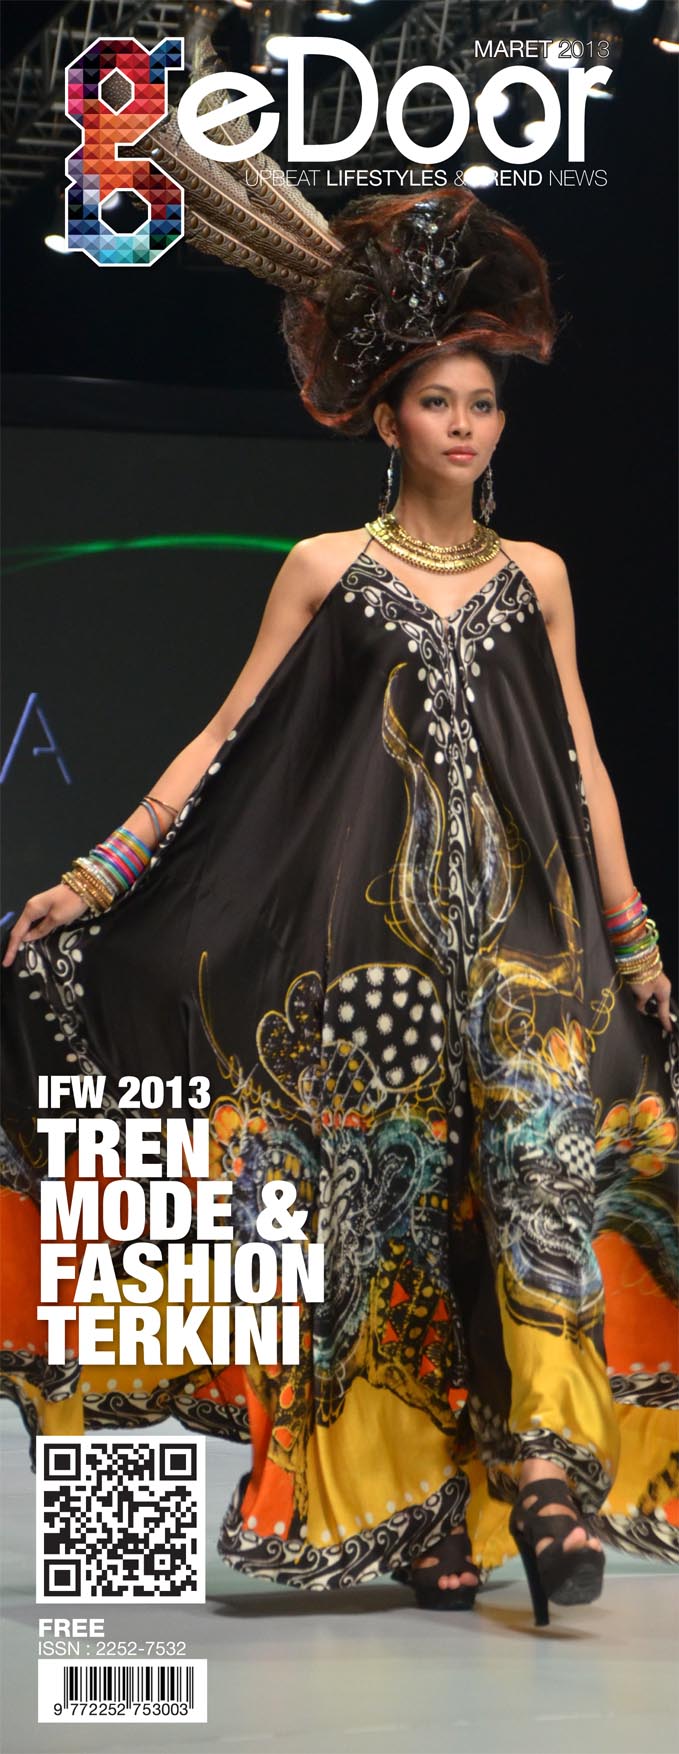 IFW 2013 Trend Mode & Fashion Terkini